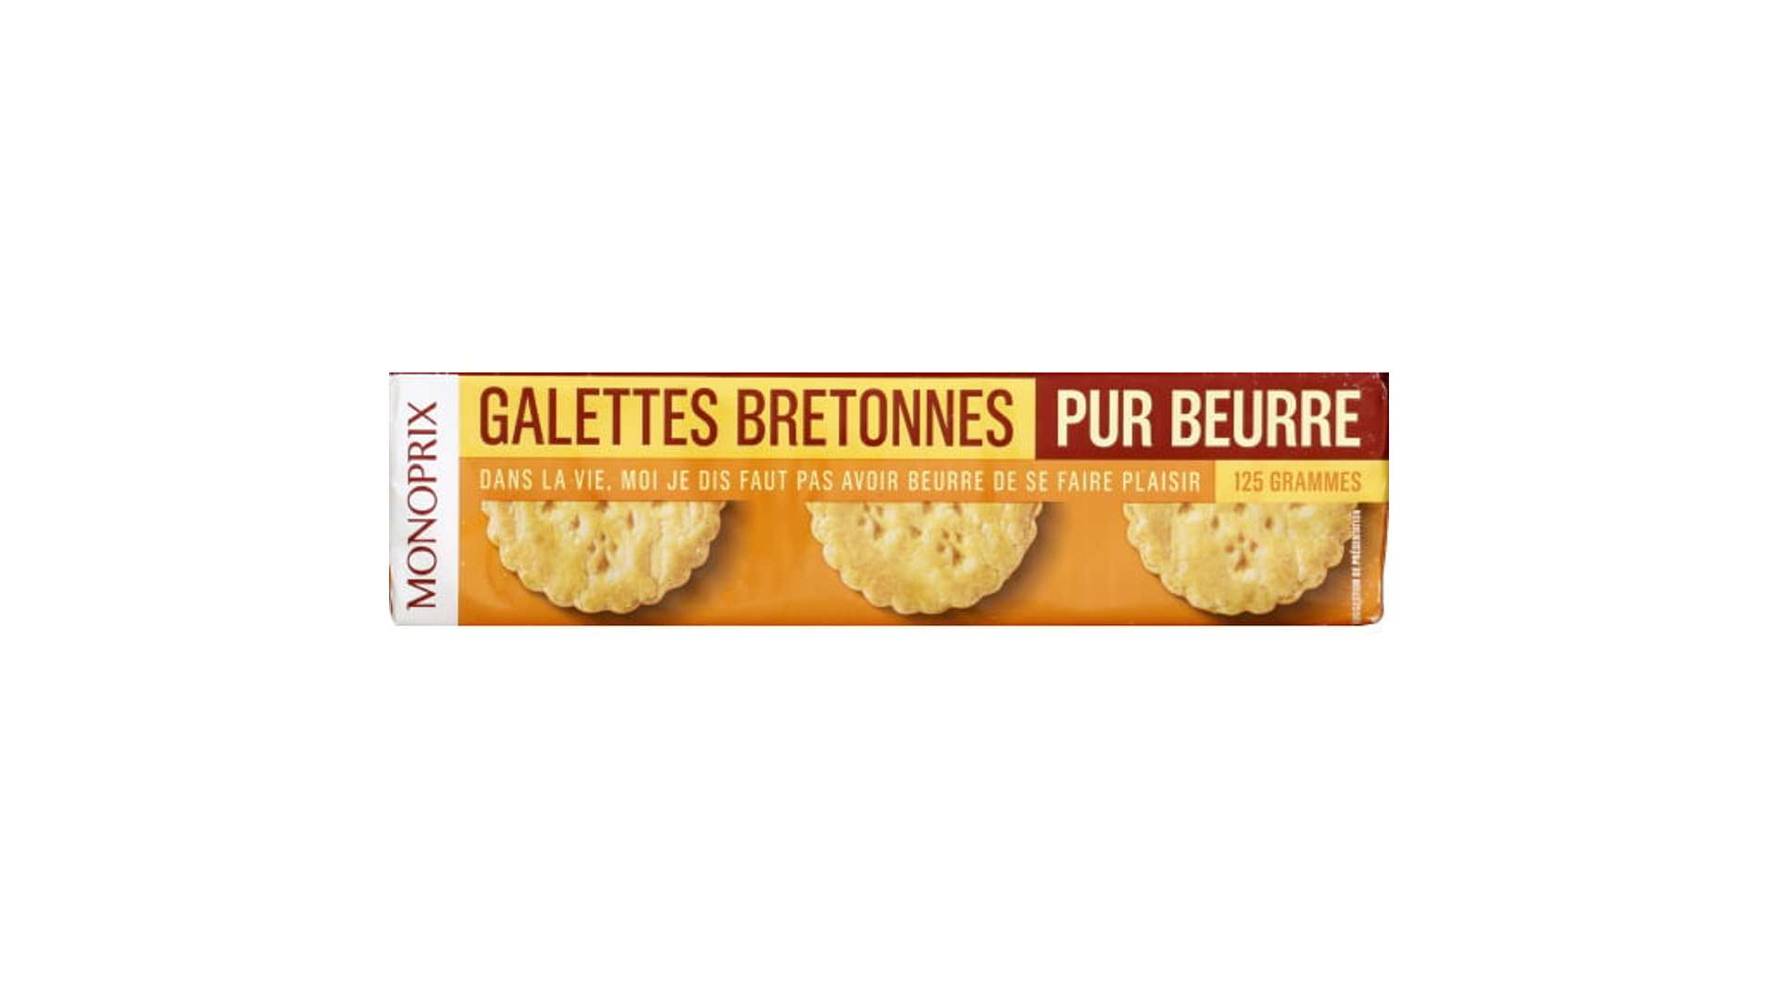 Monoprix Galettes bretonnes pur beurre Le paquet de 125g